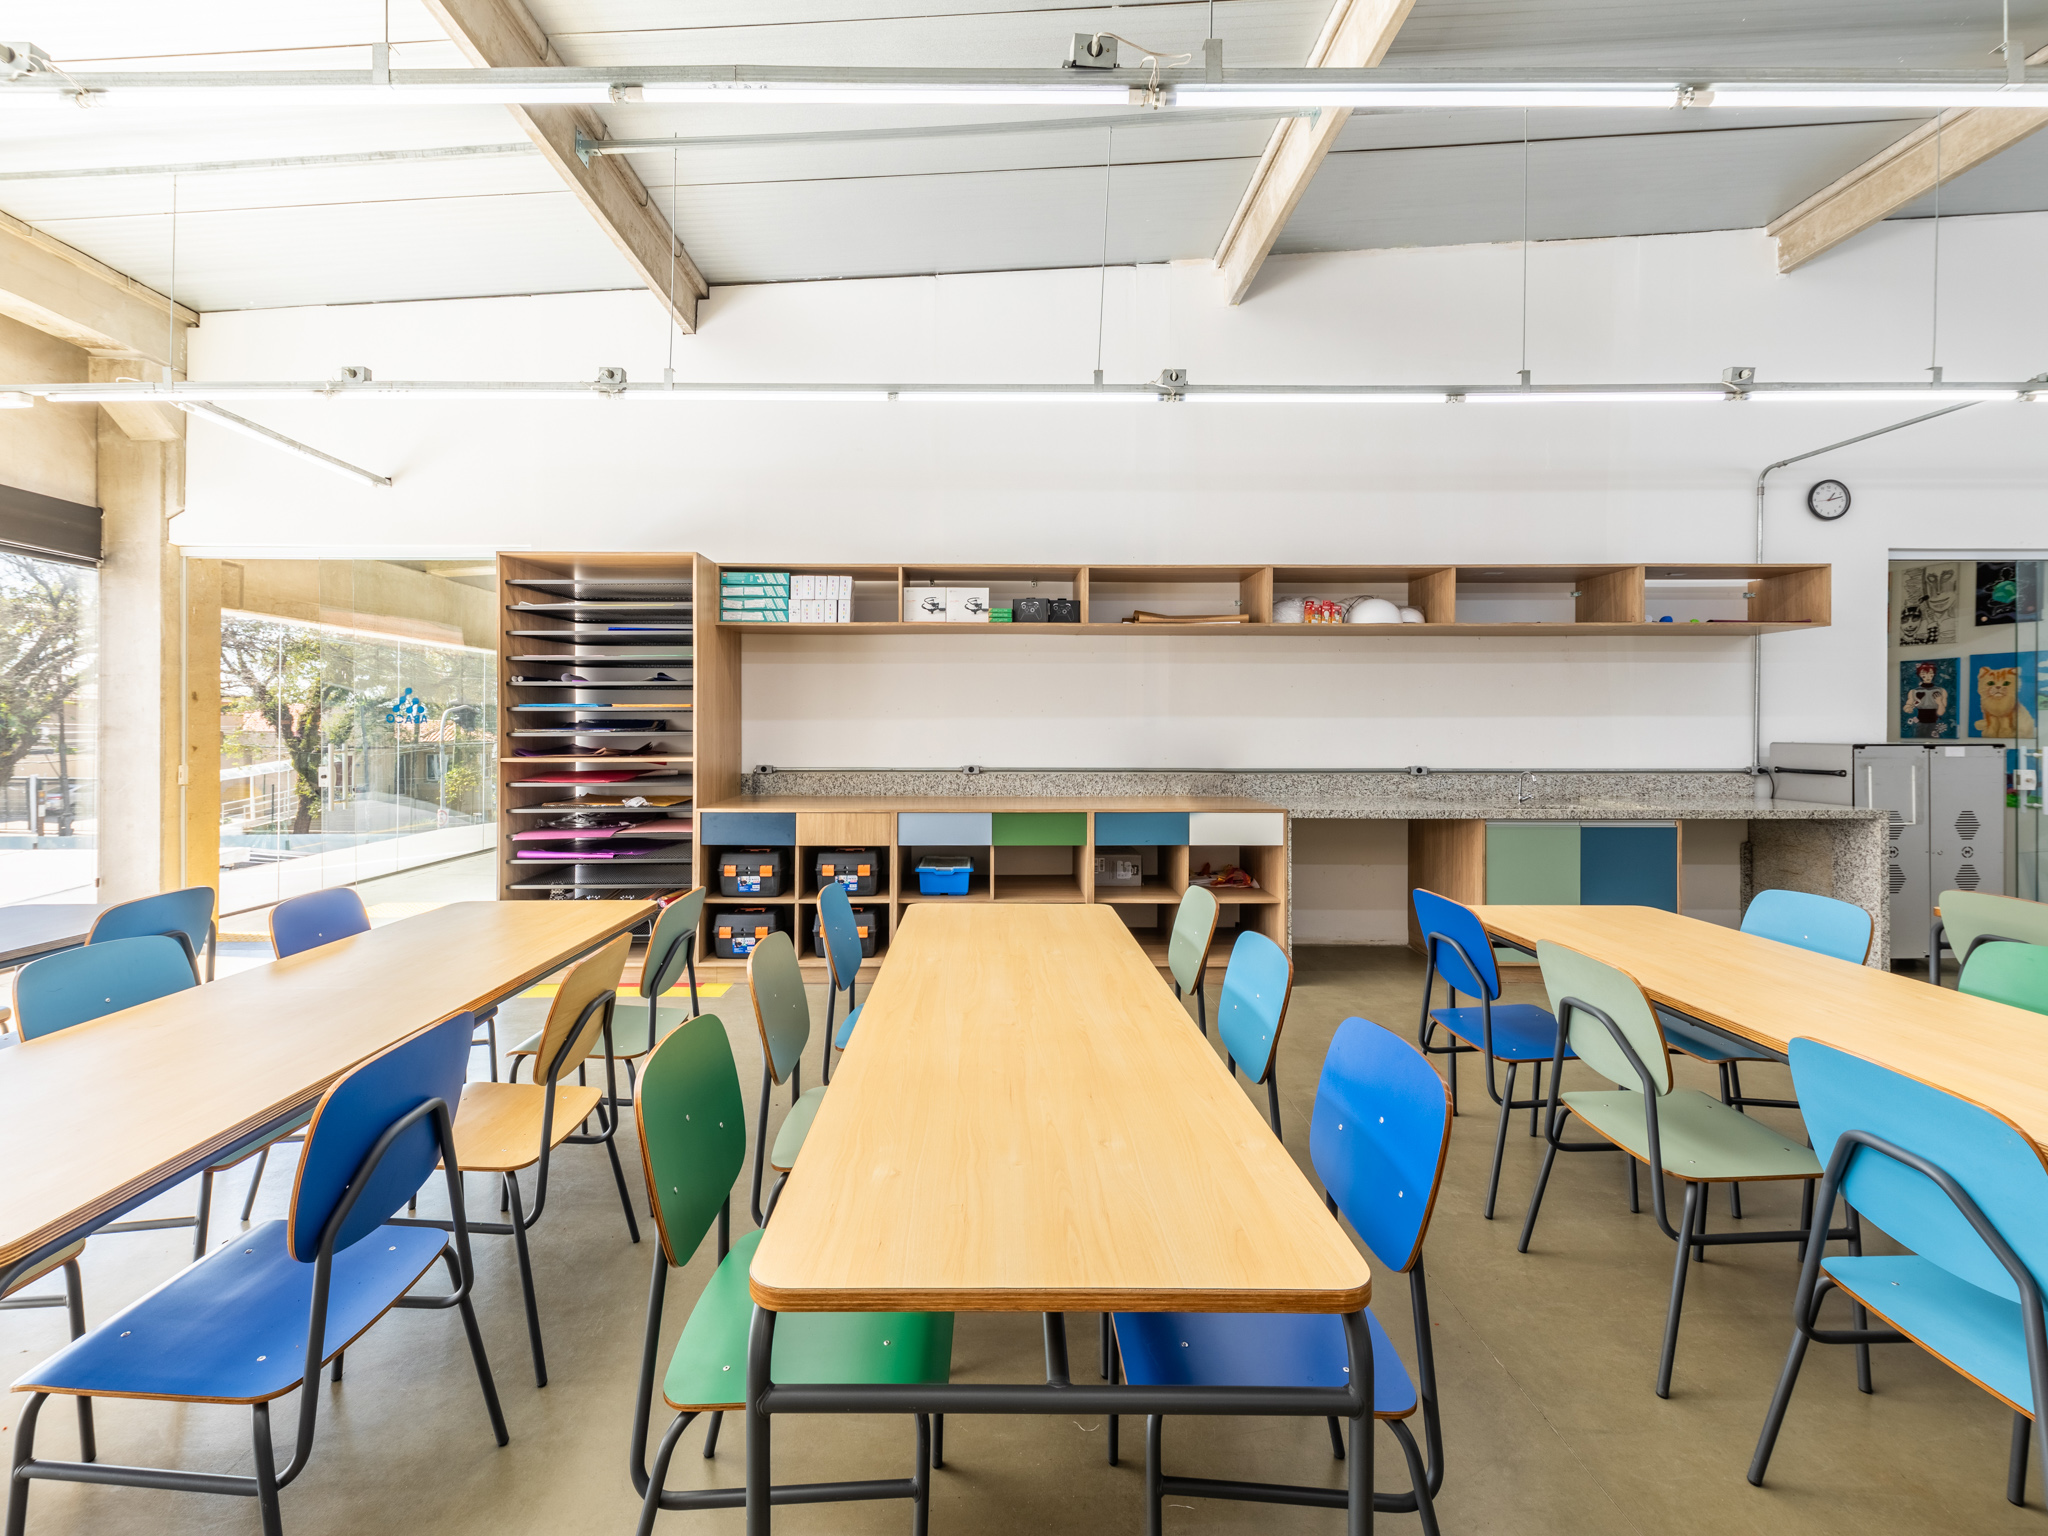 Sala de aula com mesas retangulares e cadeiras coloridas. No fundo, prateleiras com materiais escolares.